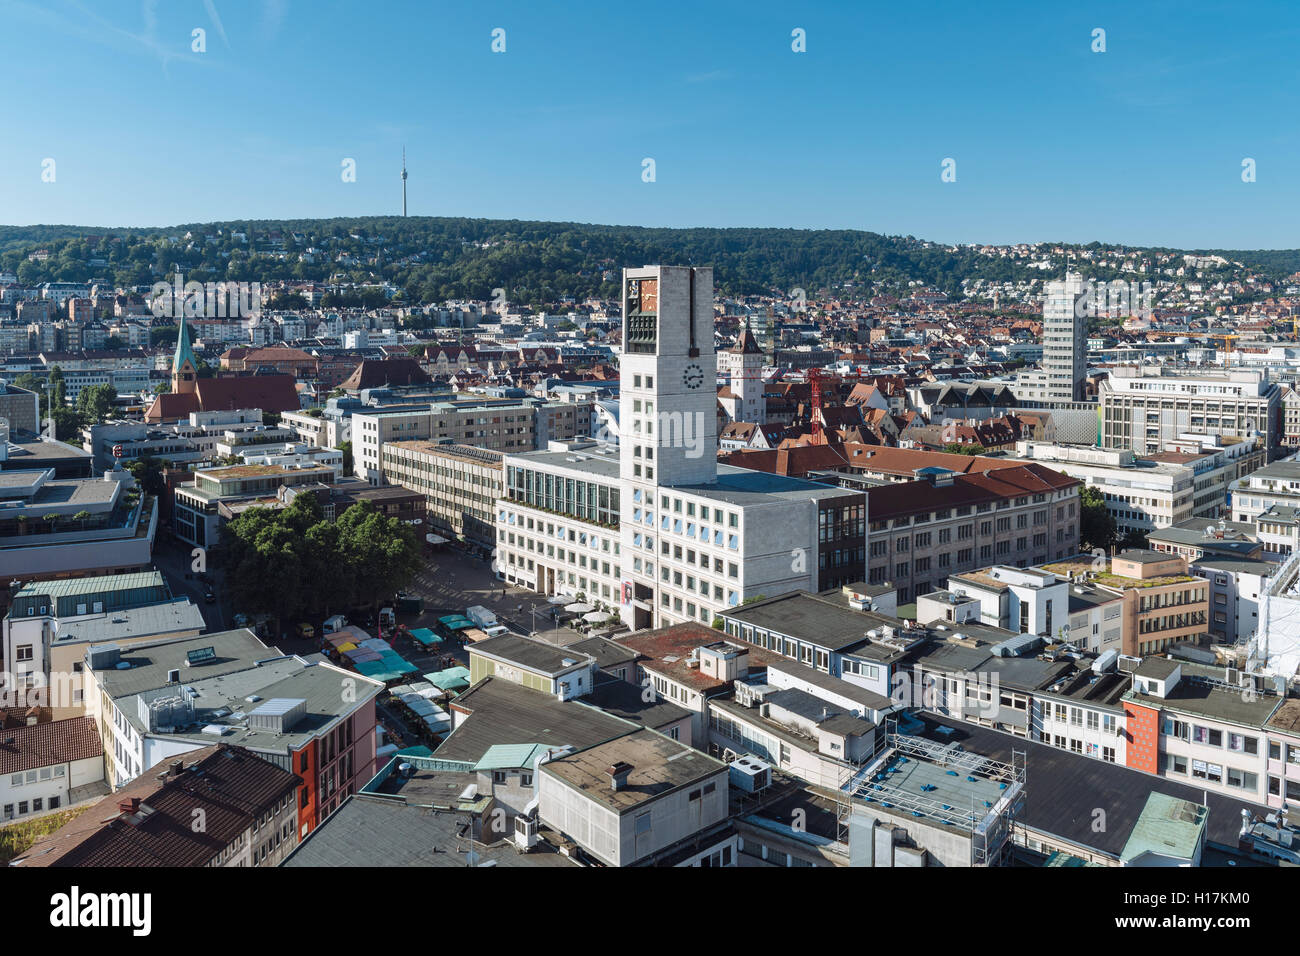 Blick auf die Stadt, Rathaus und Marktplatz, Stuttgart, Baden-Württemberg, Deutschland Stockfoto